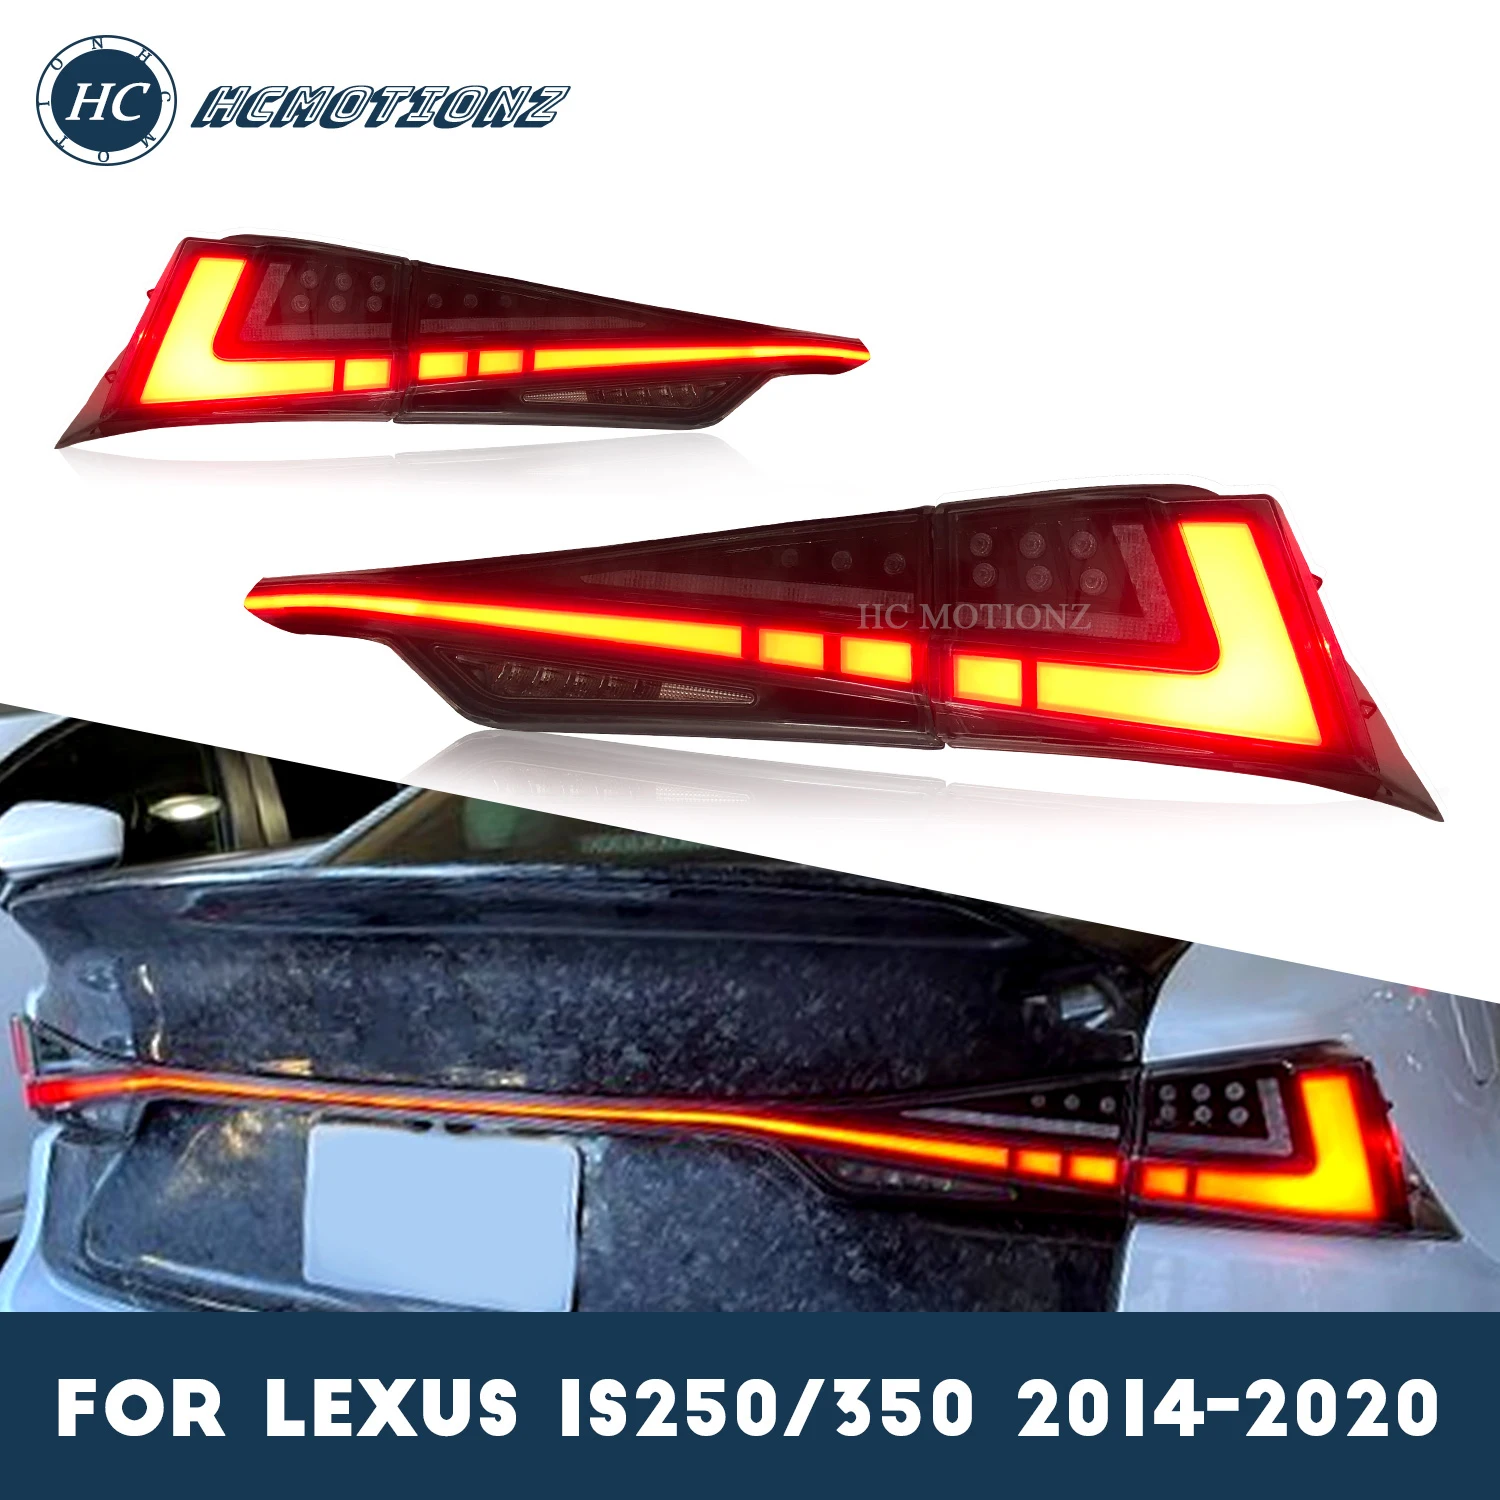 

Автомобильные задние фонари HCmotion для Lexus IS 300h IS250 300 350 t F 200-2014, светодиодная задняя фара в сборе для запуска и анимации DRL